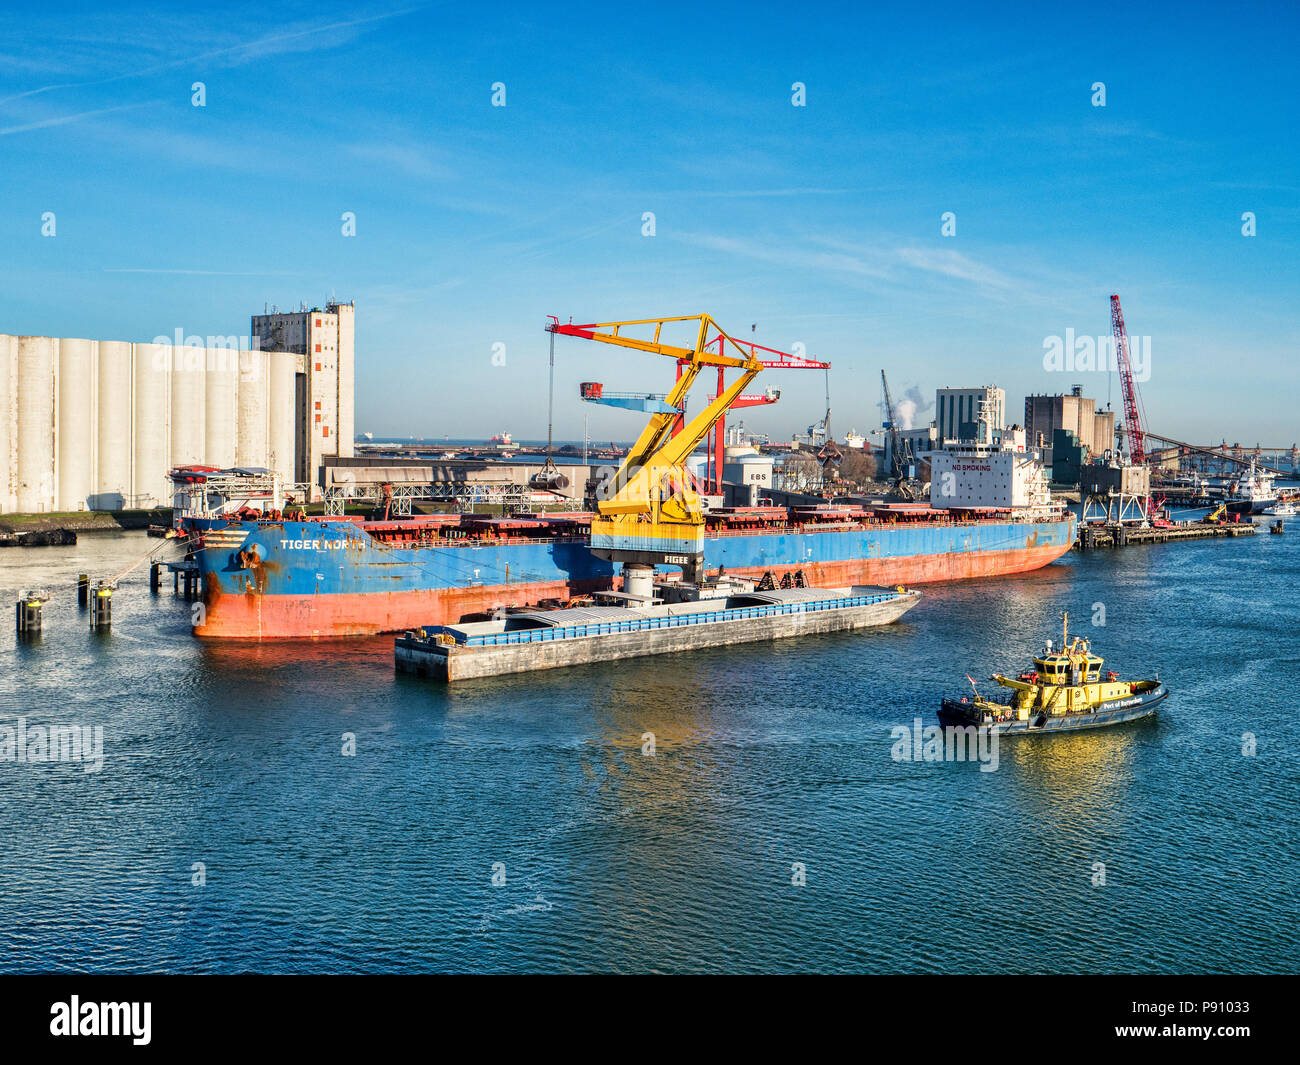 El 6 de abril de 2018: Rotterdam, Holanda - Bulk Carrier Tiger Norte está descargado en el puerto de Rotterdam en una luminosa mañana de primavera con el cielo azul claro. Foto de stock